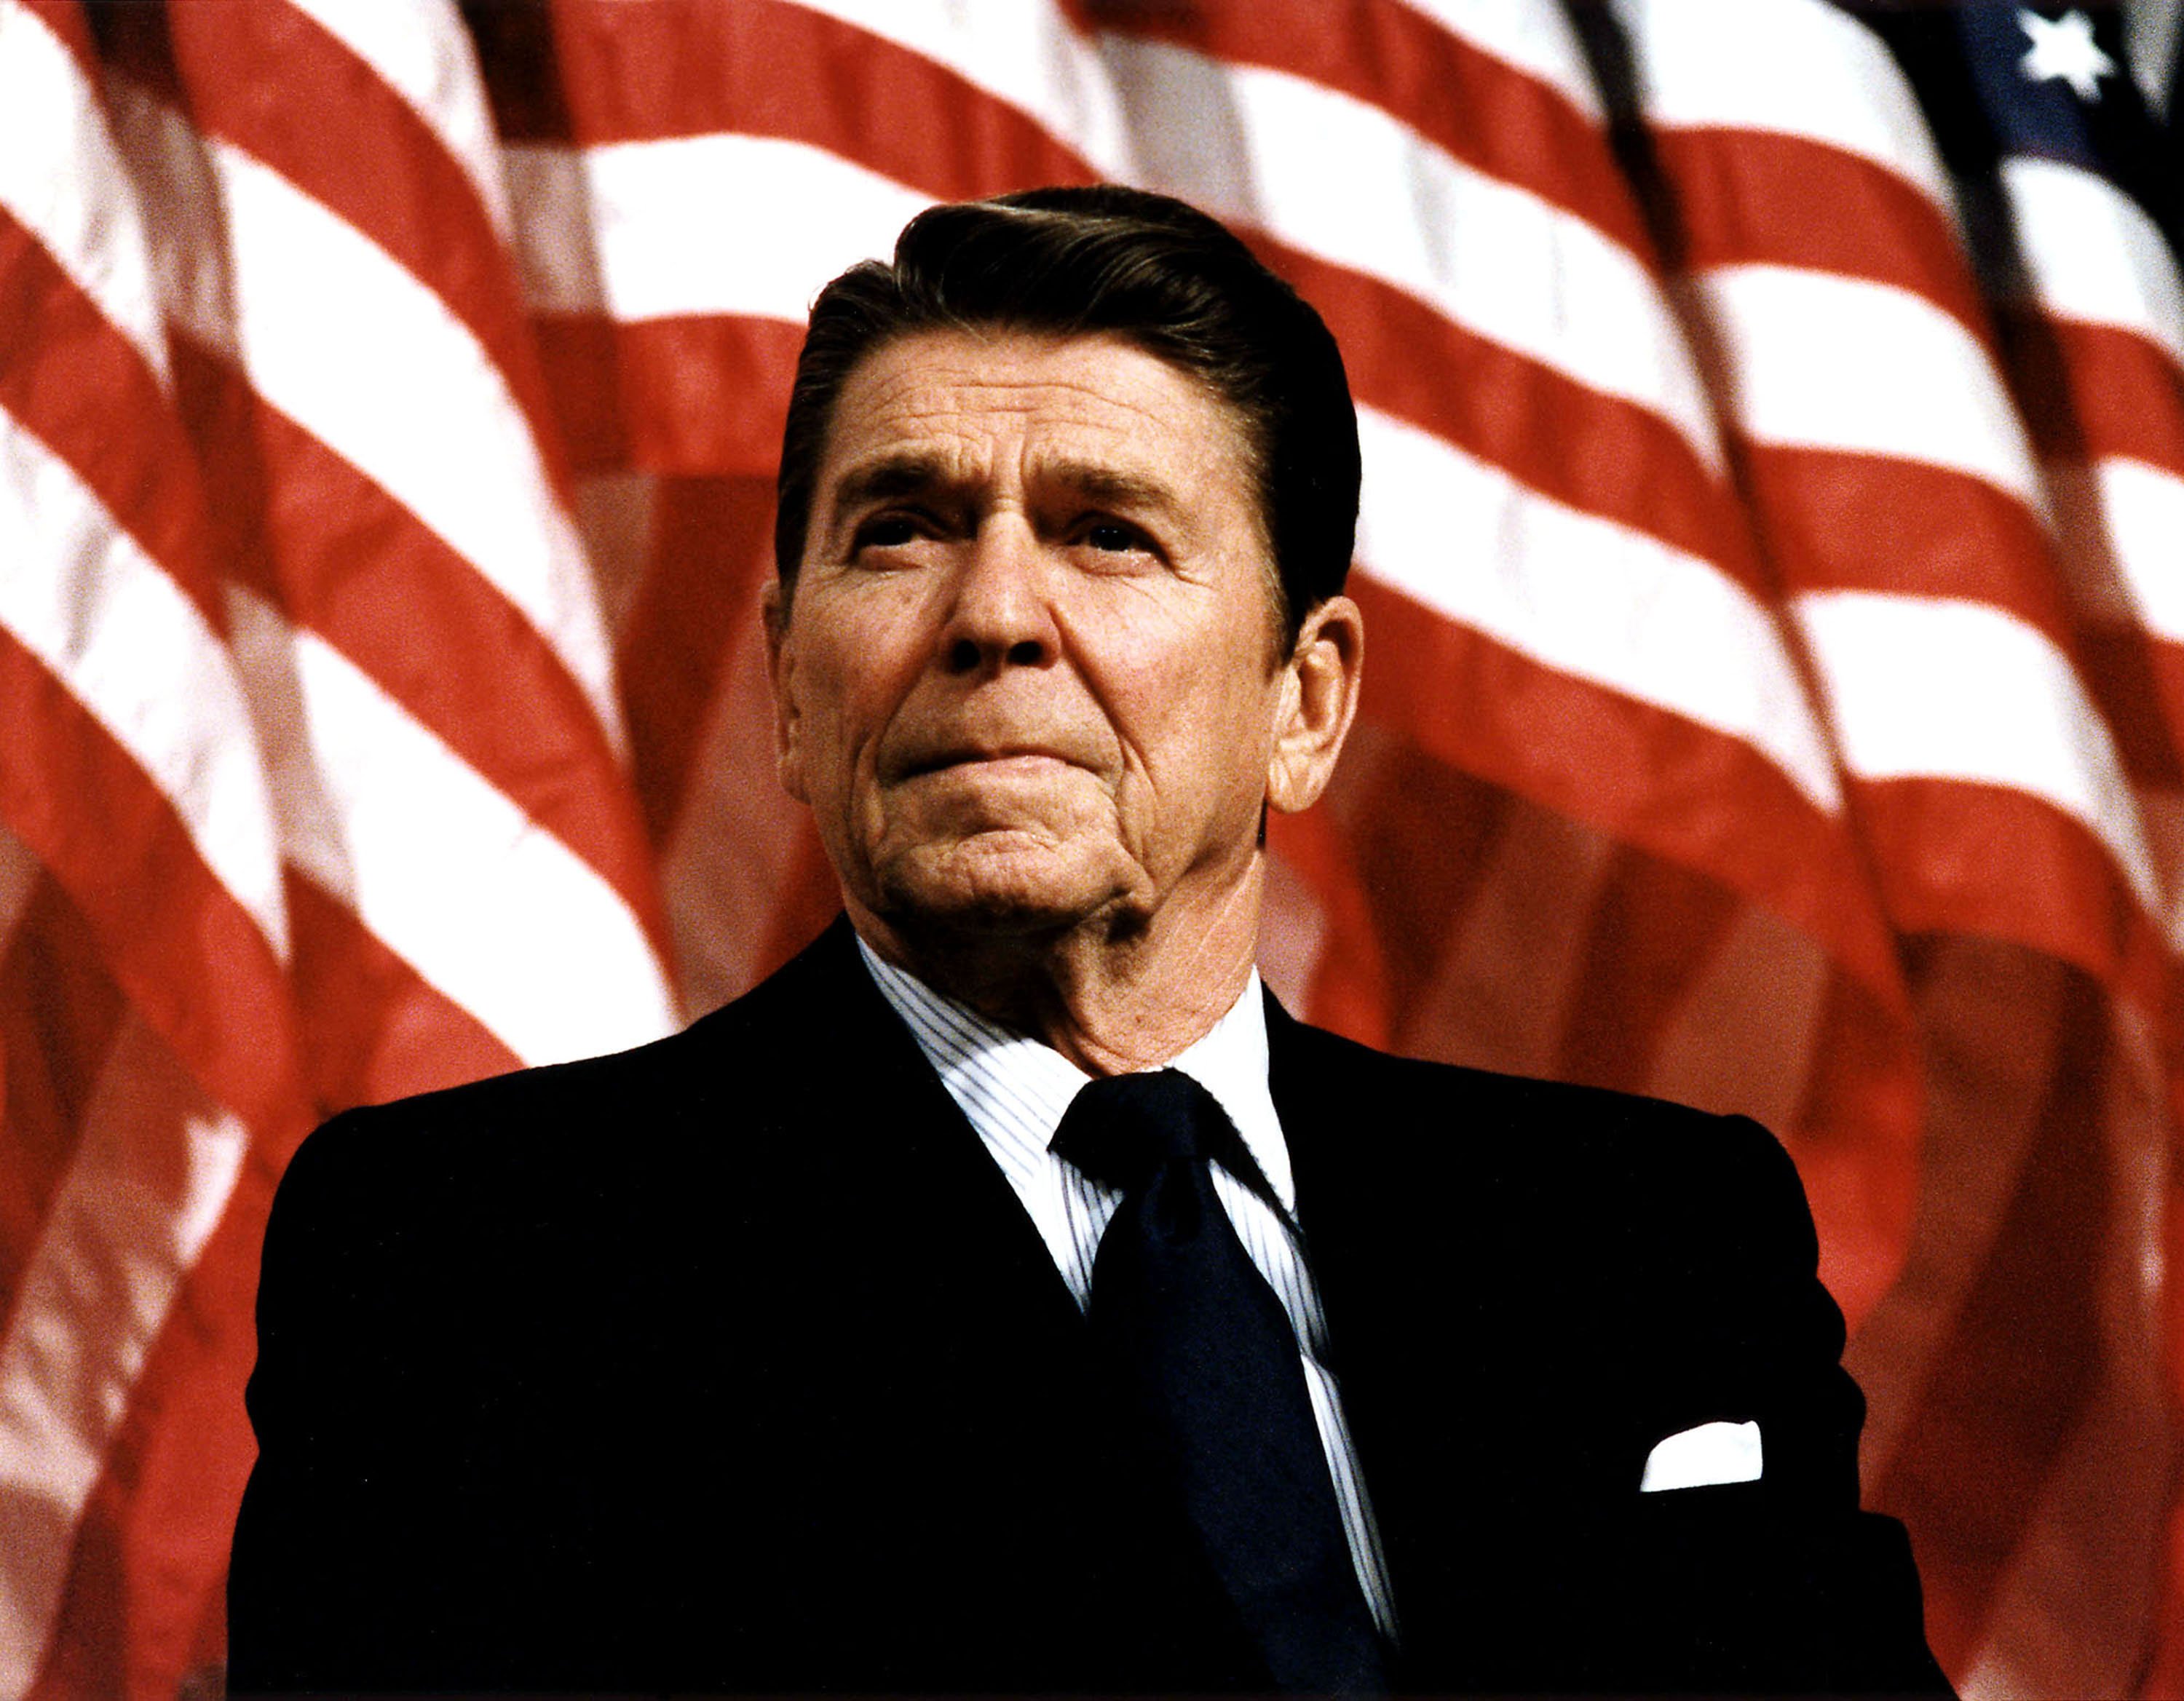 Le président Ronald Reagan au rassemblement de la convention républicaine de Durenberger, 1982. | Source : Getty Images